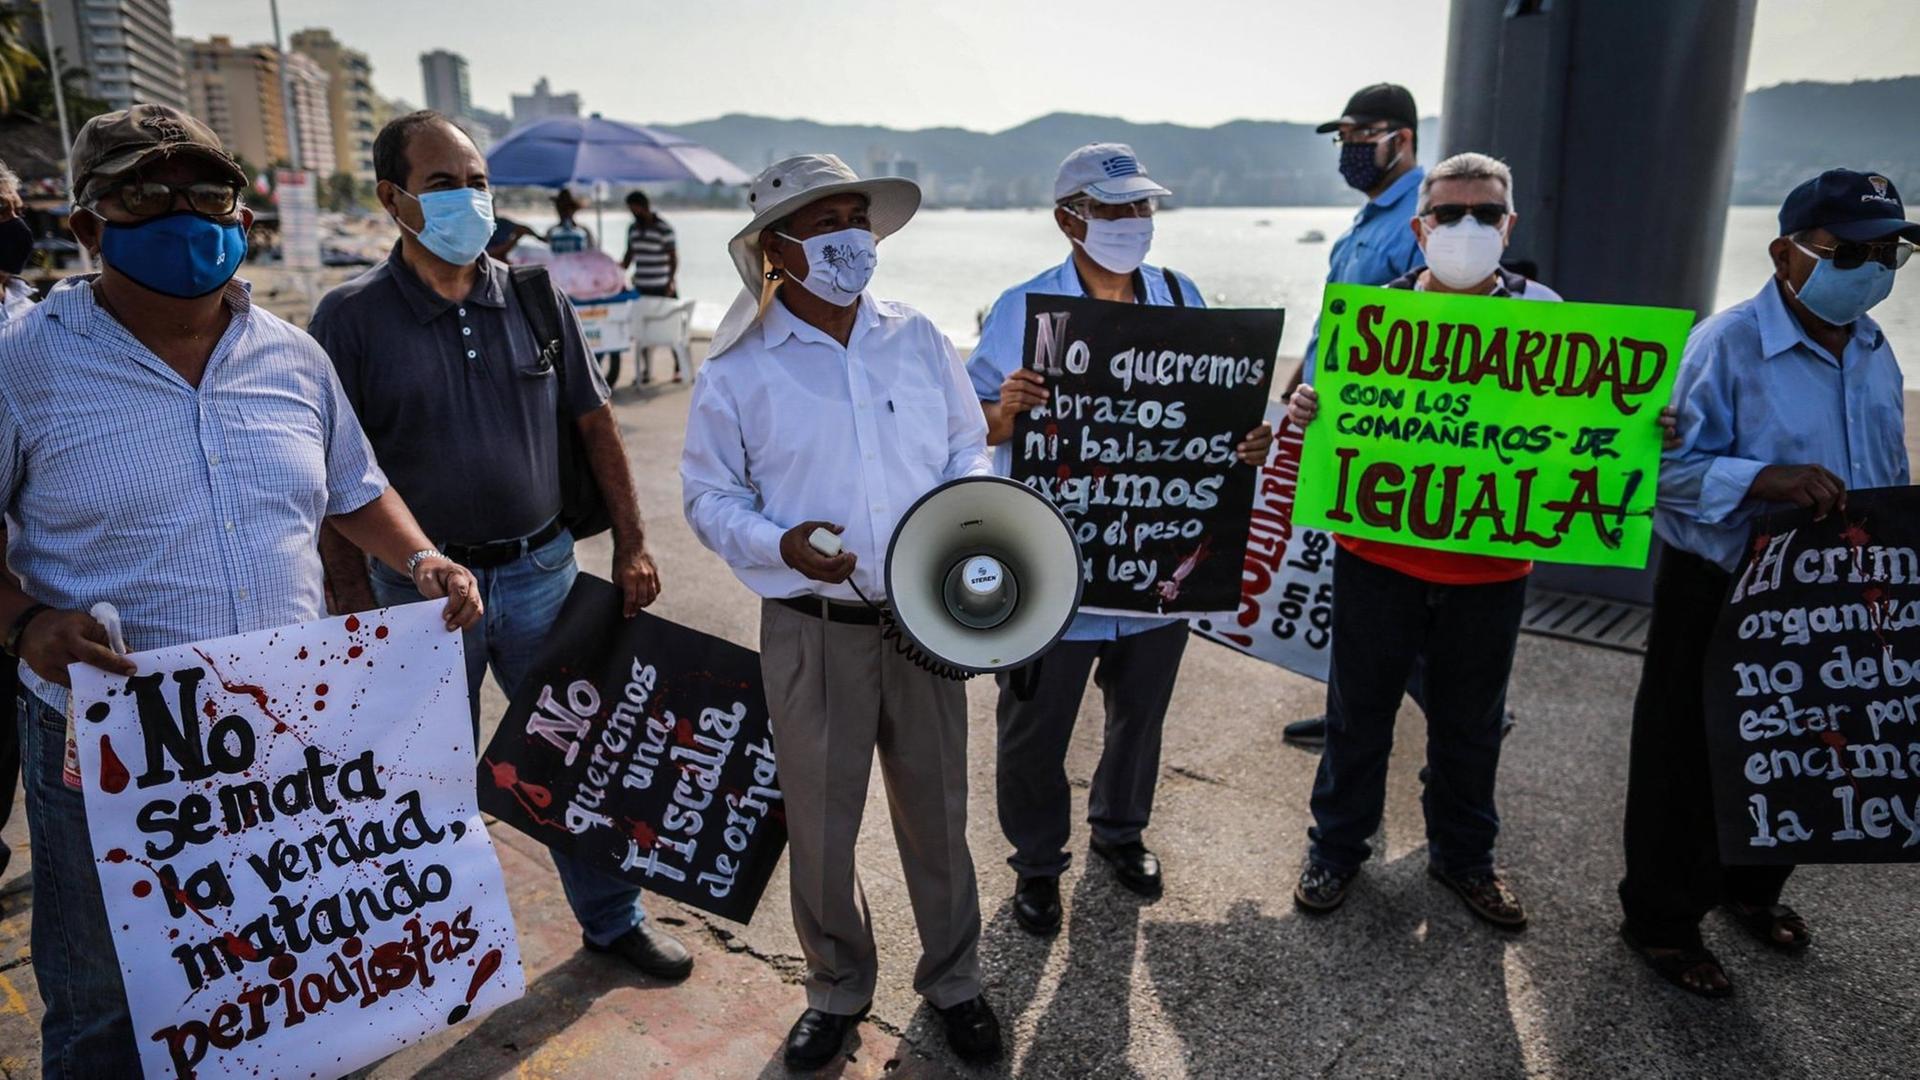 Mehrere Männer mit Gesichtsmasken, einem Megafon und beschrifteten Plakaten stehen an einer Hafenmole.